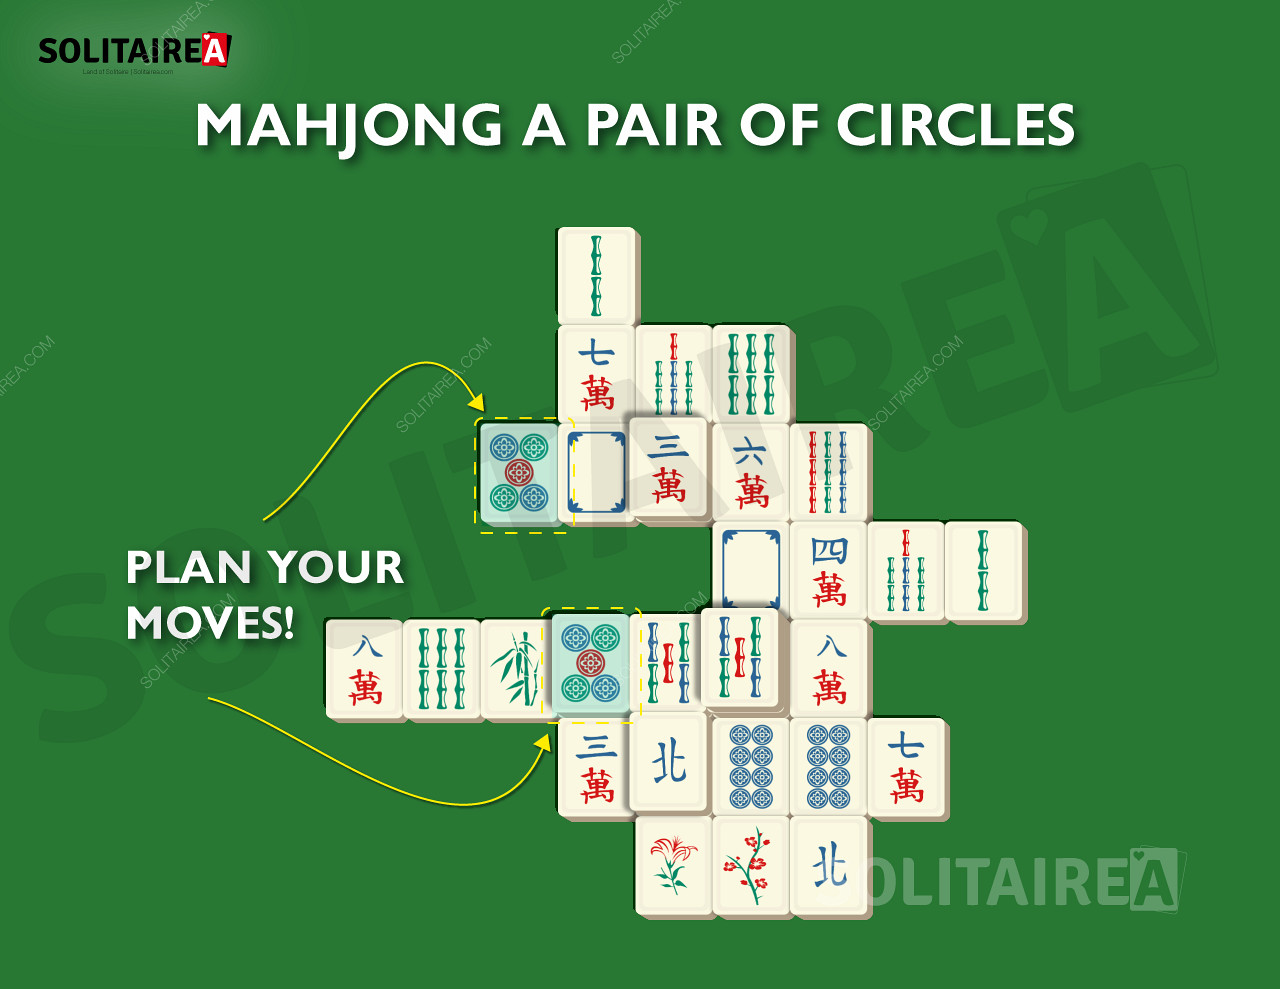 Imagem que mostra como planear as suas jogadas como forma de desenvolver uma estratégia vencedora.